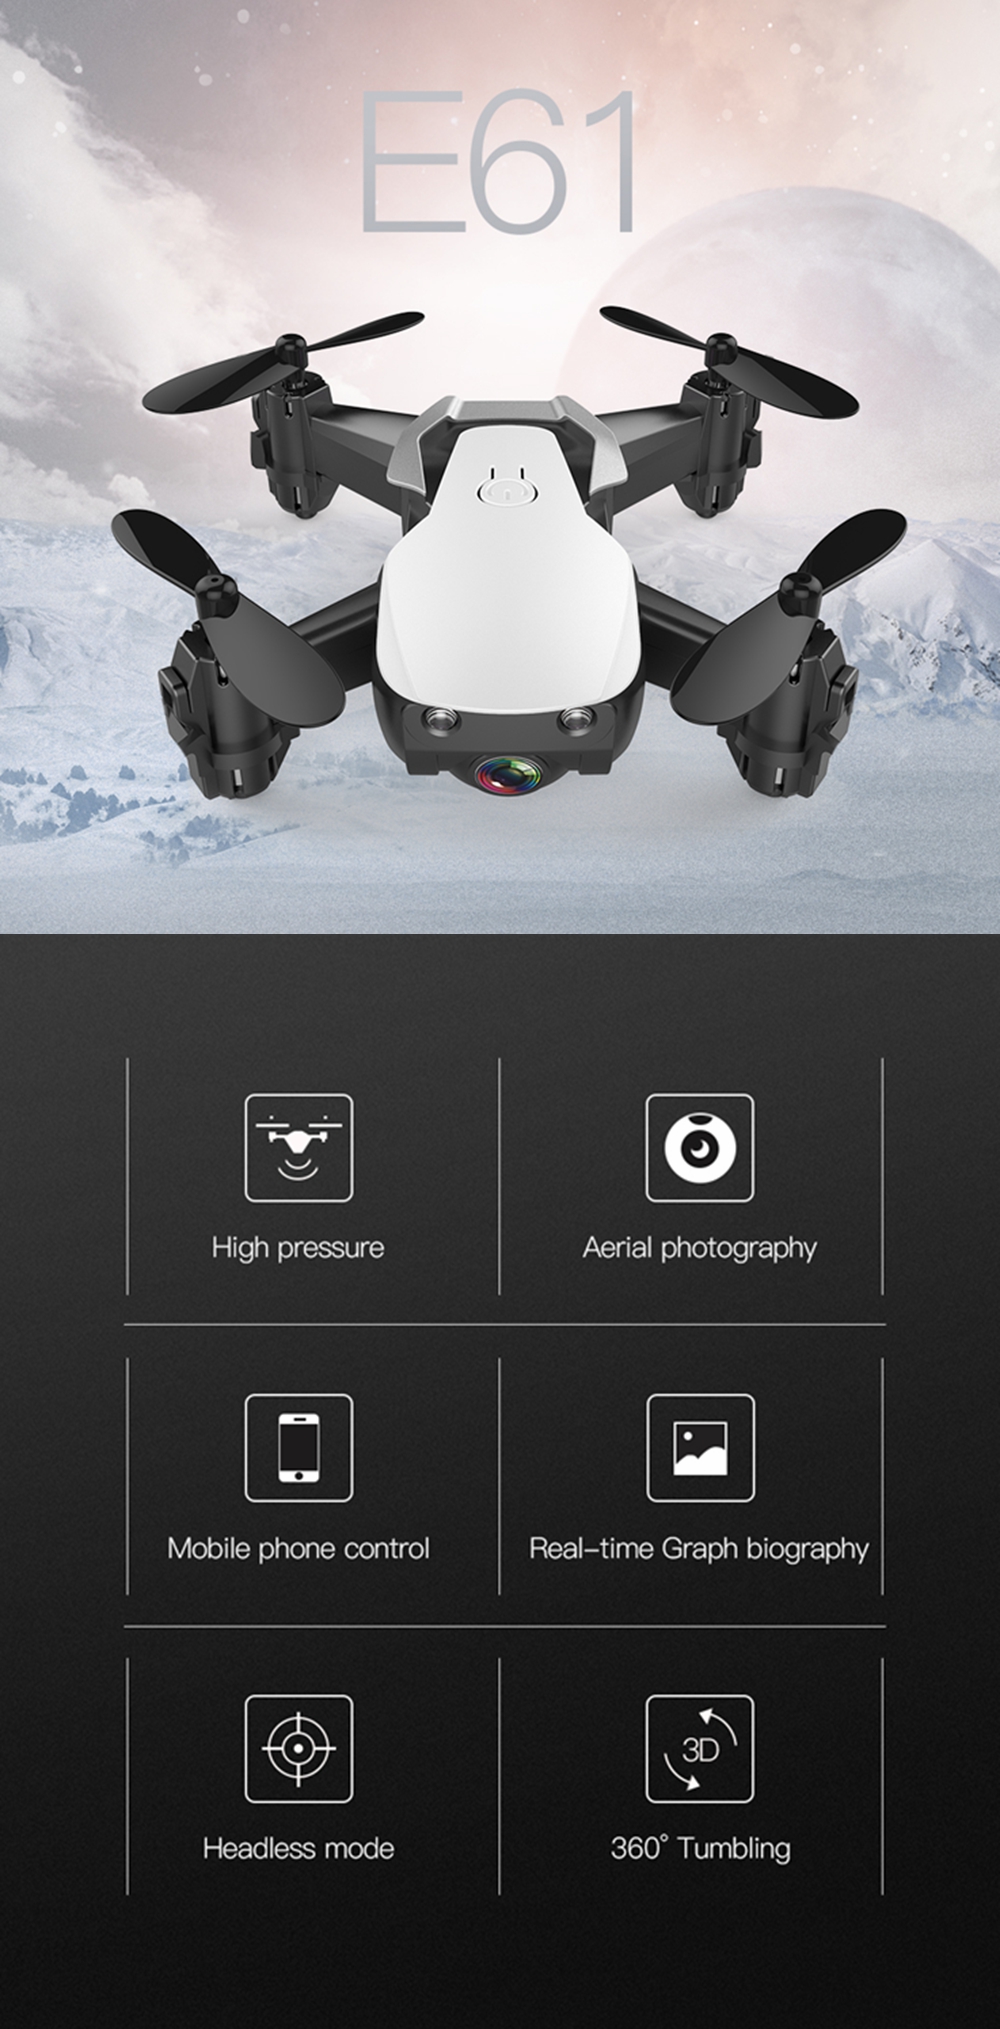 Eachine-E61E61HW-Mini-WiFi-FPV-With-720P-HD-Camera-Altitude-Hold-Mode-RC-Drone-Quadcopter-RTF-1384204-1